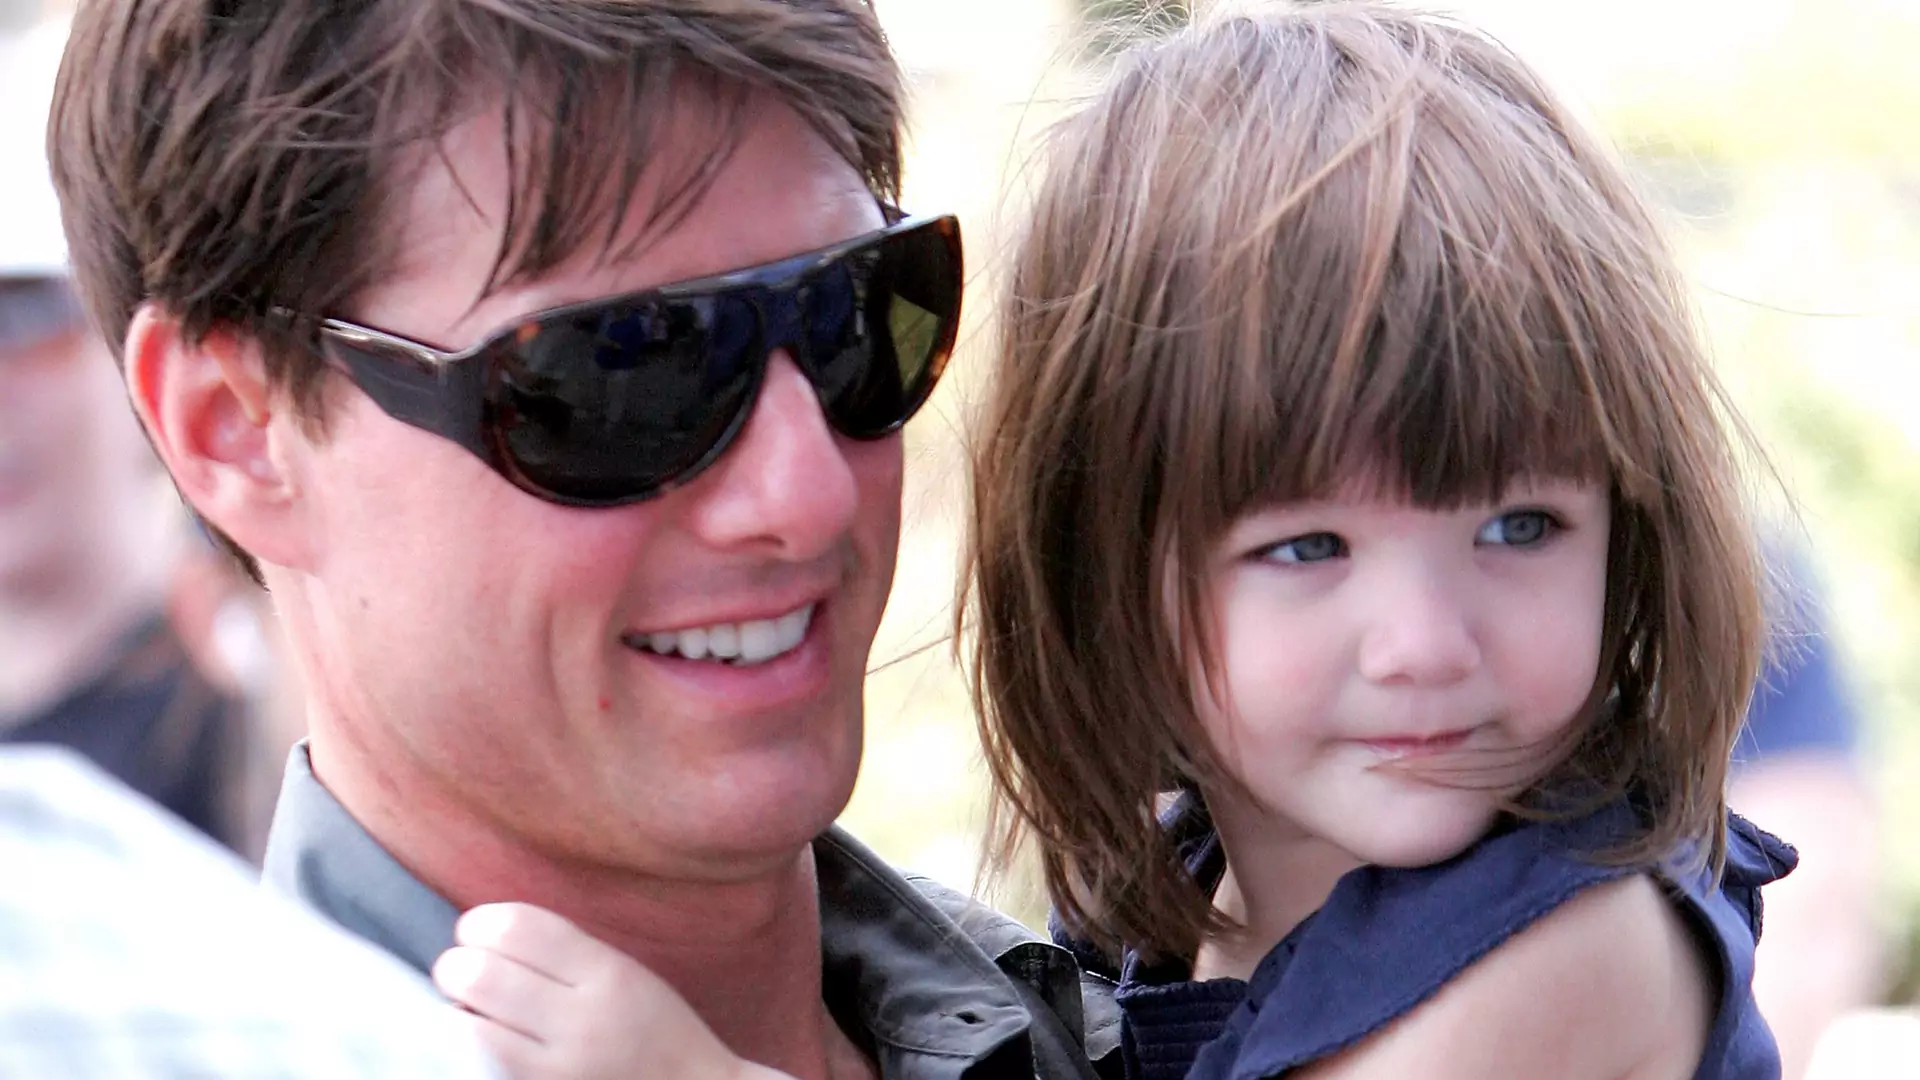 Jak dziś wygląda córka Toma Cruise'a? Bardzo się zmieniła